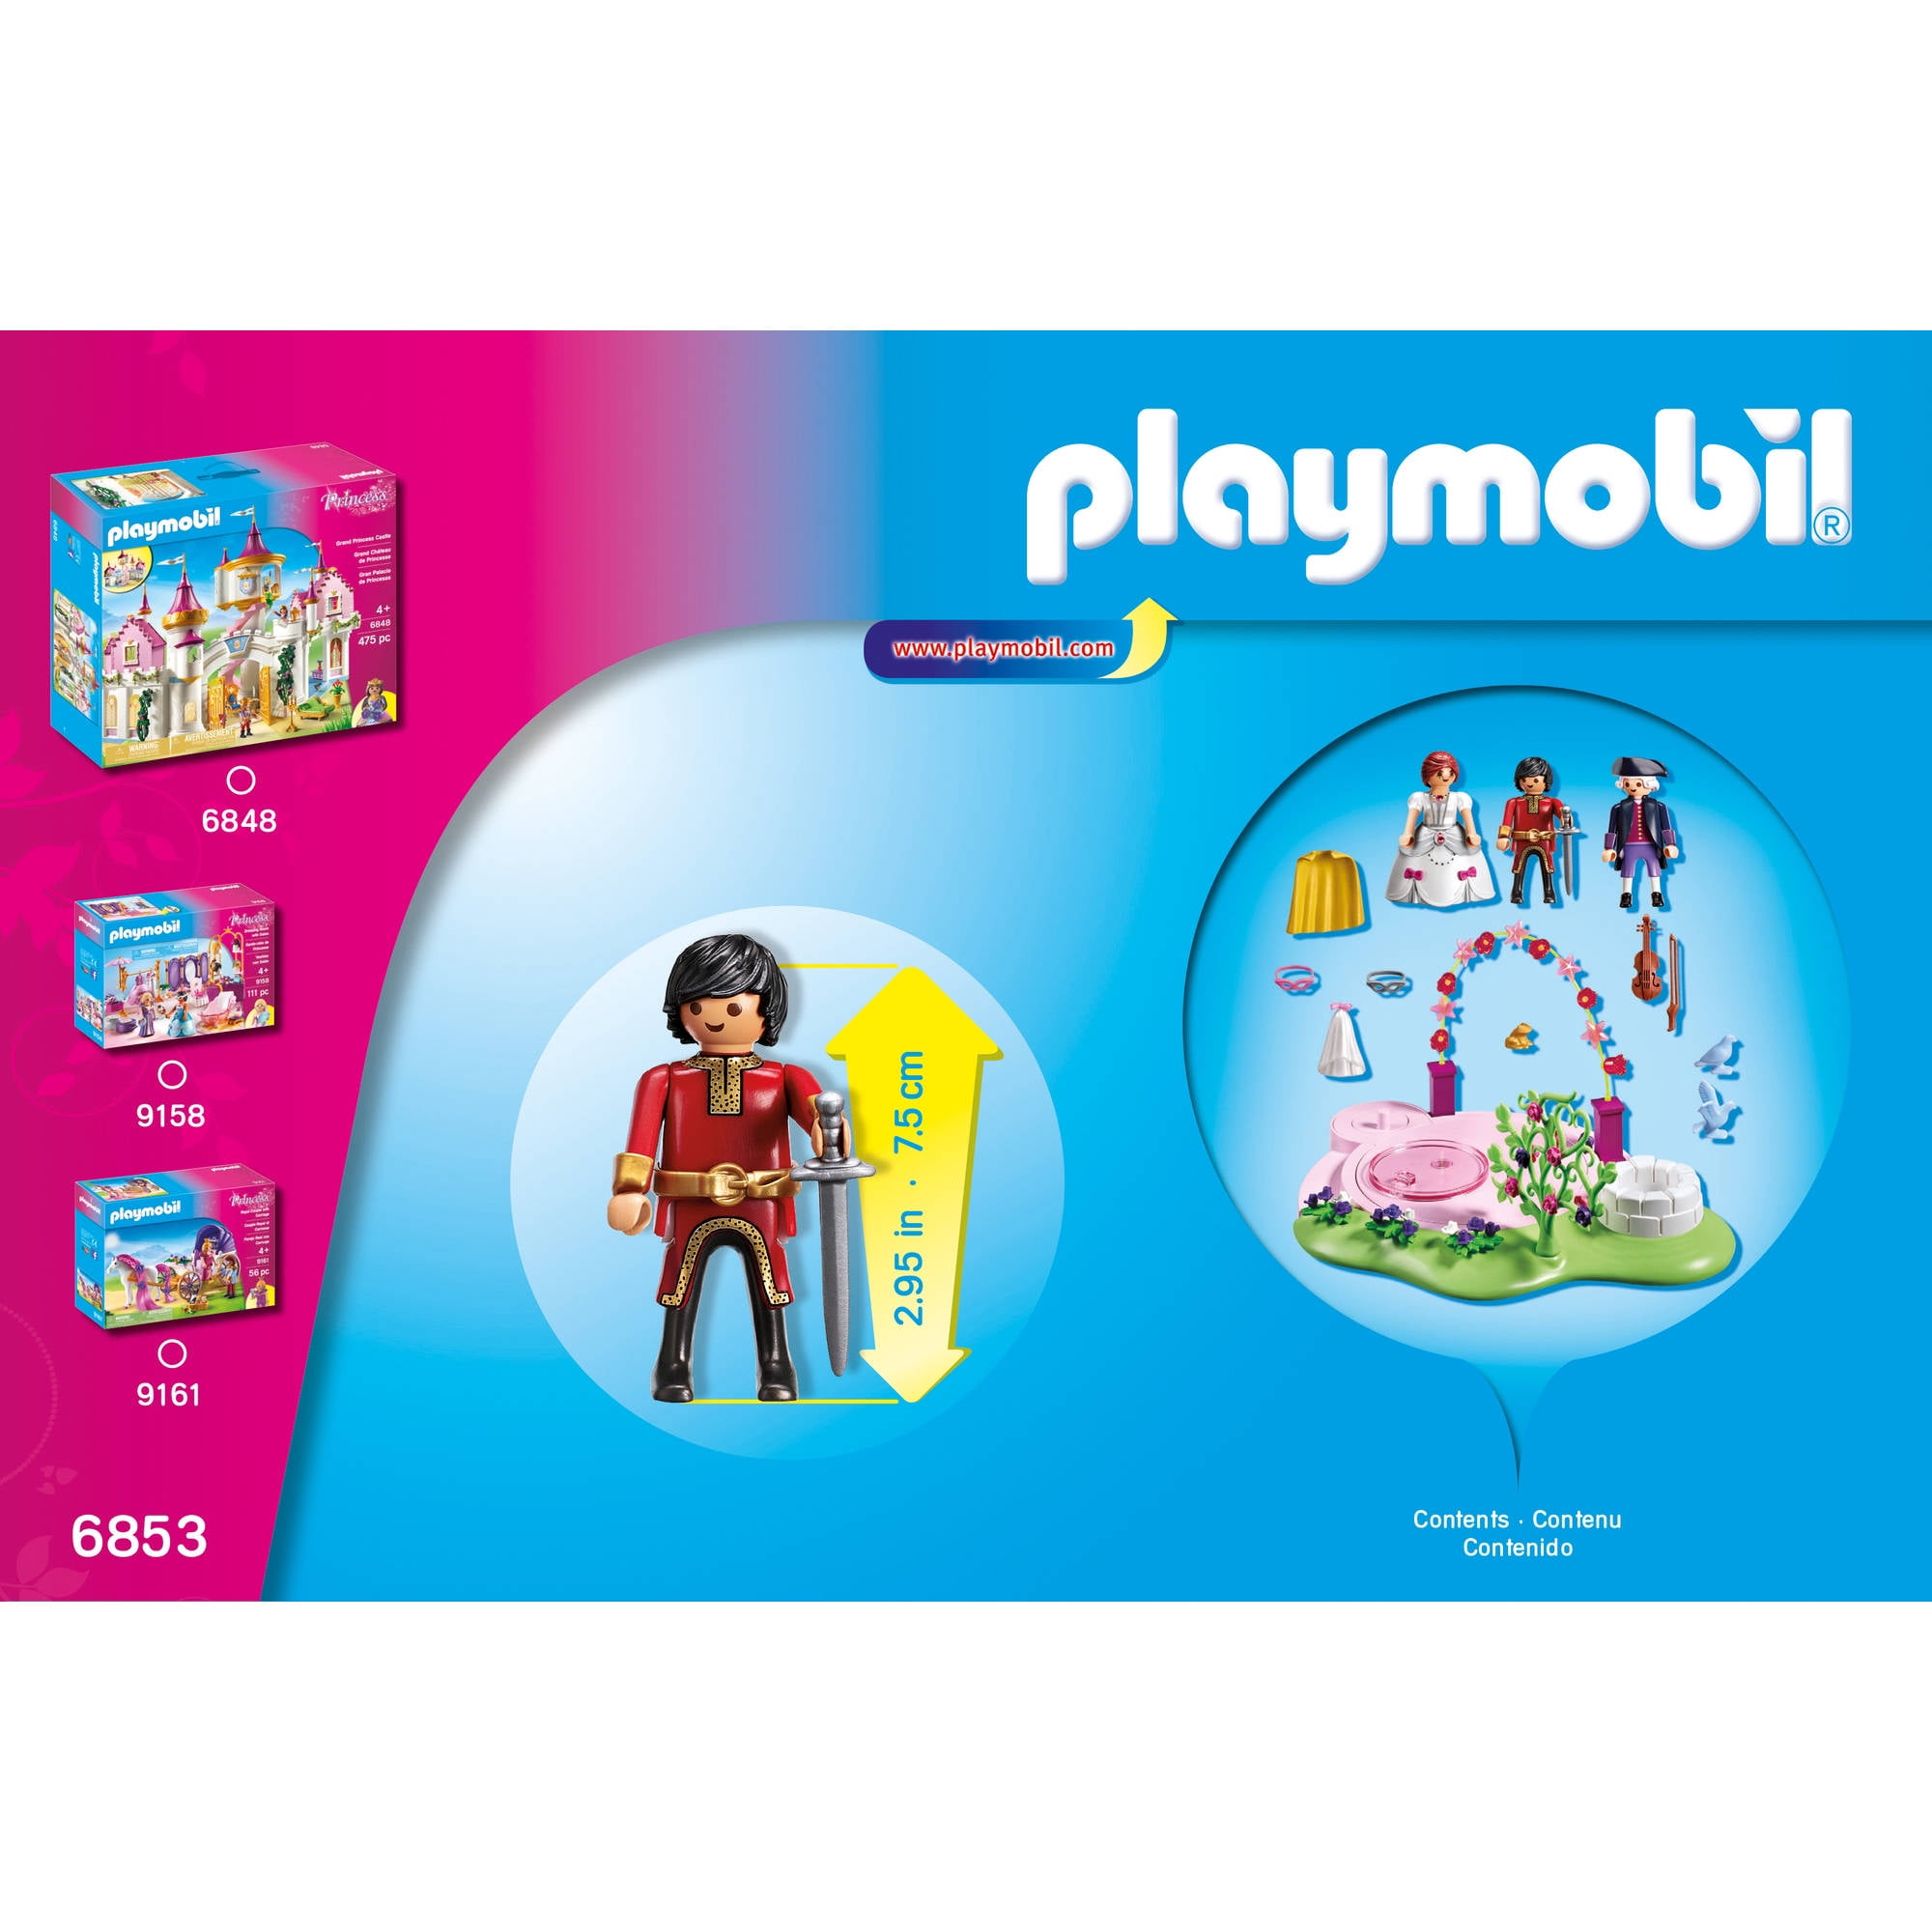 Playmobil Princess - Bal Masqué Royal — Juguetesland